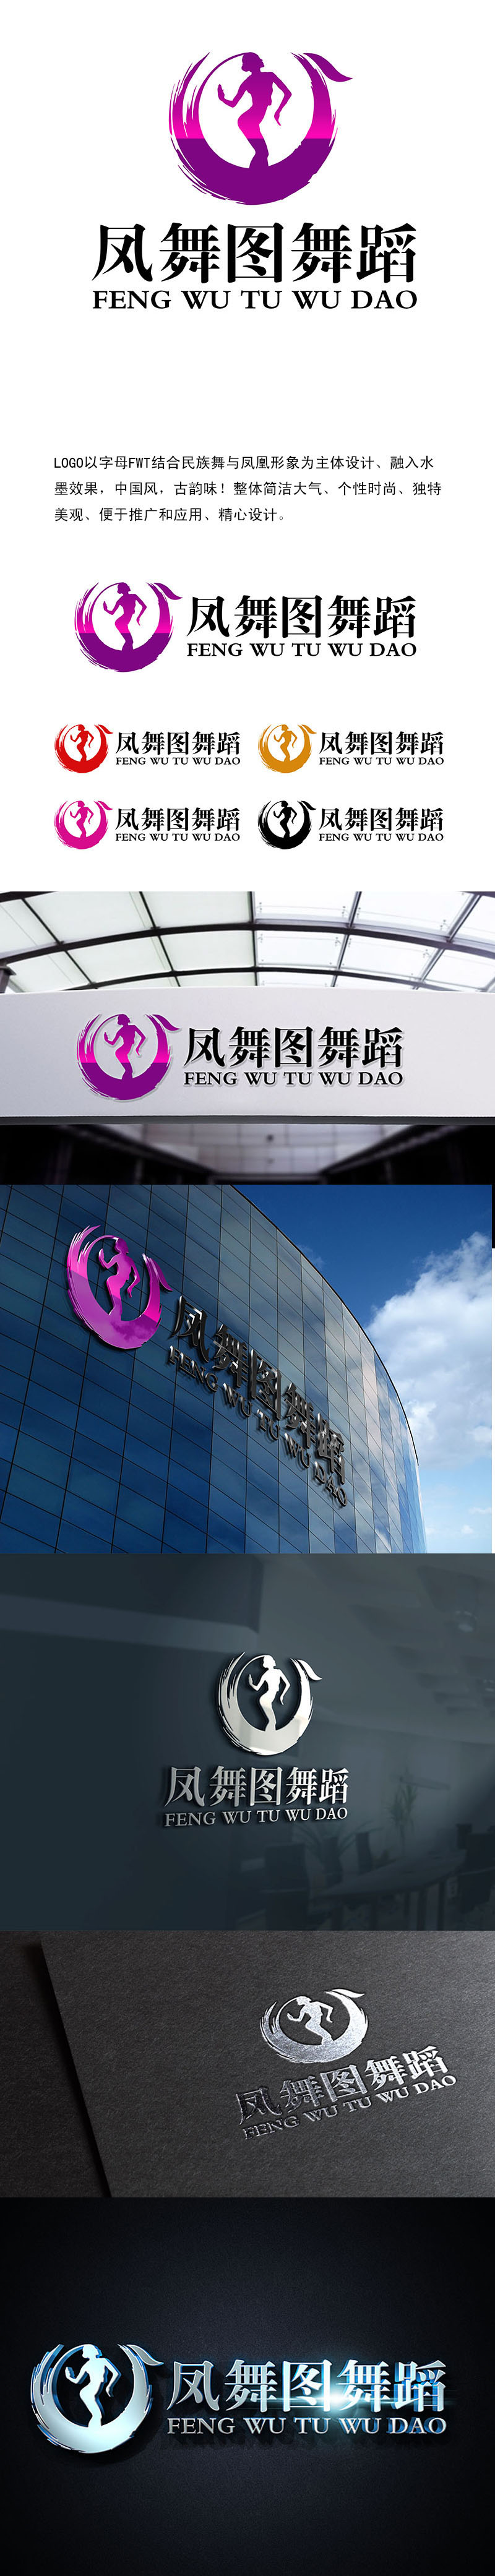 潘乐的深圳市凤舞图舞蹈文化艺术培训有限公司logo设计